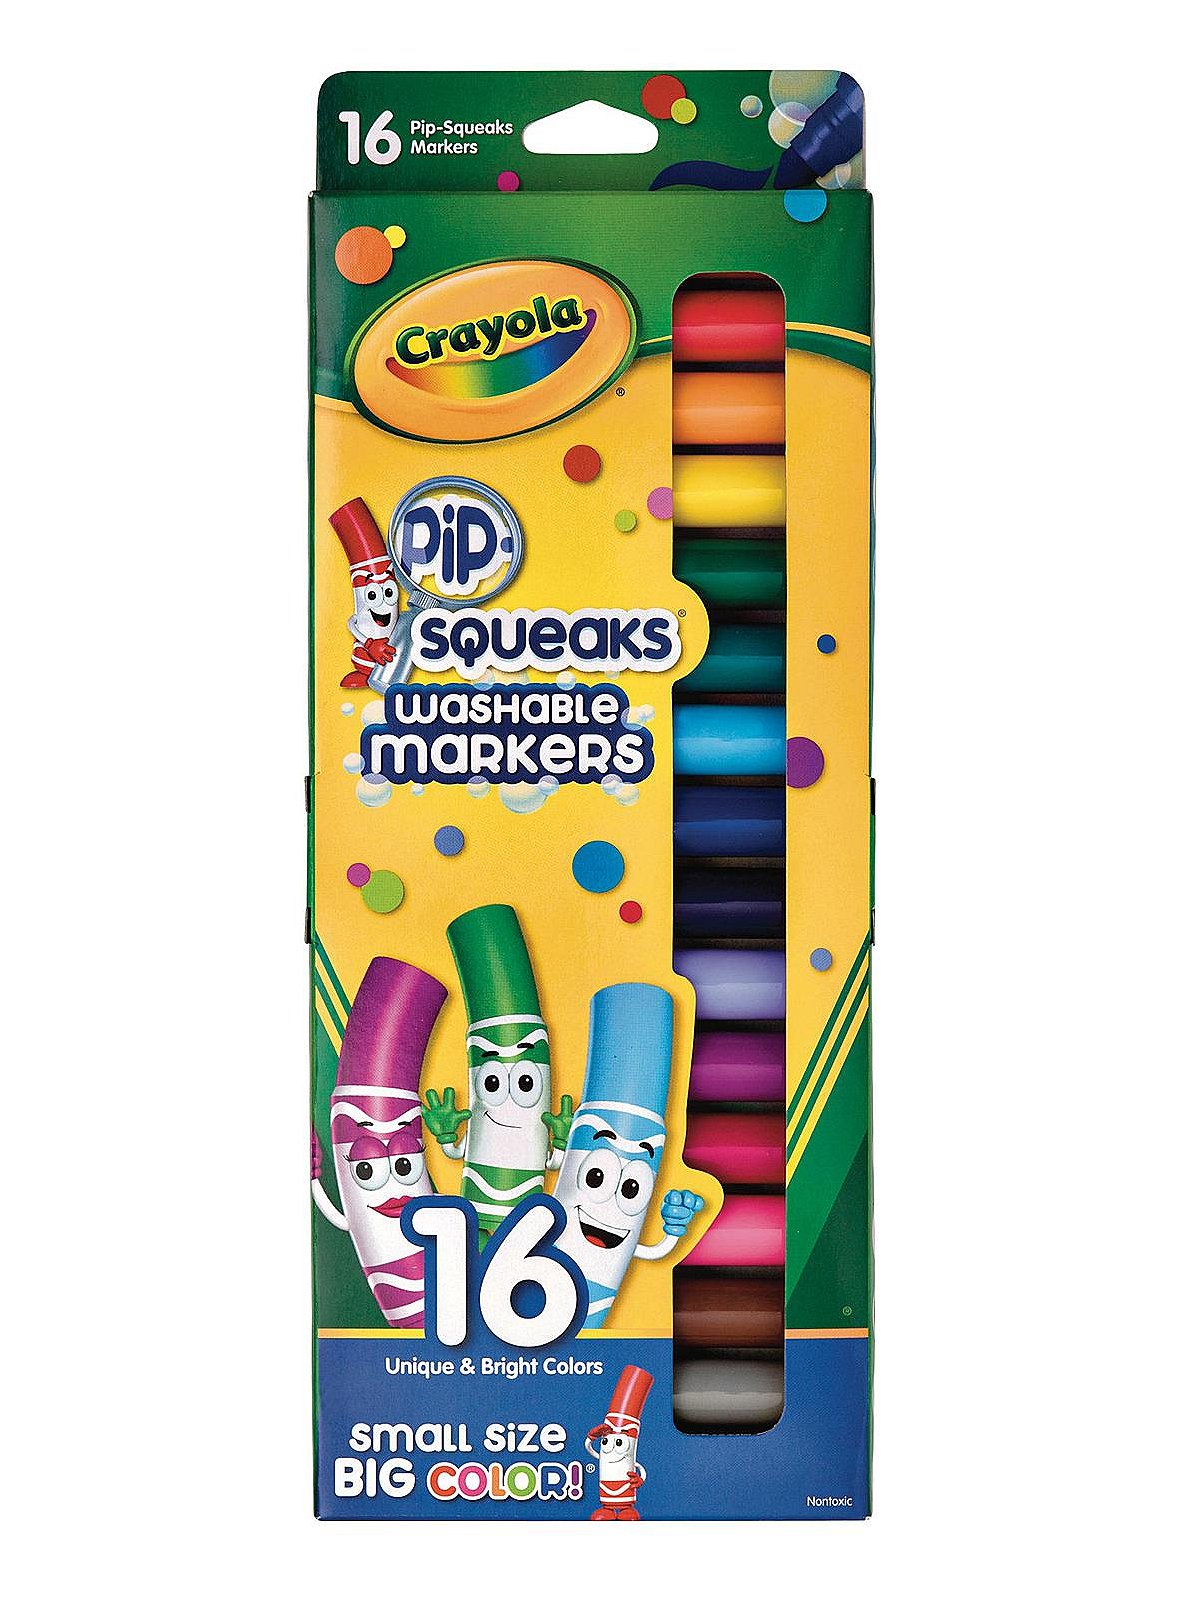 Crayola 8 Washable Markers Multicolor